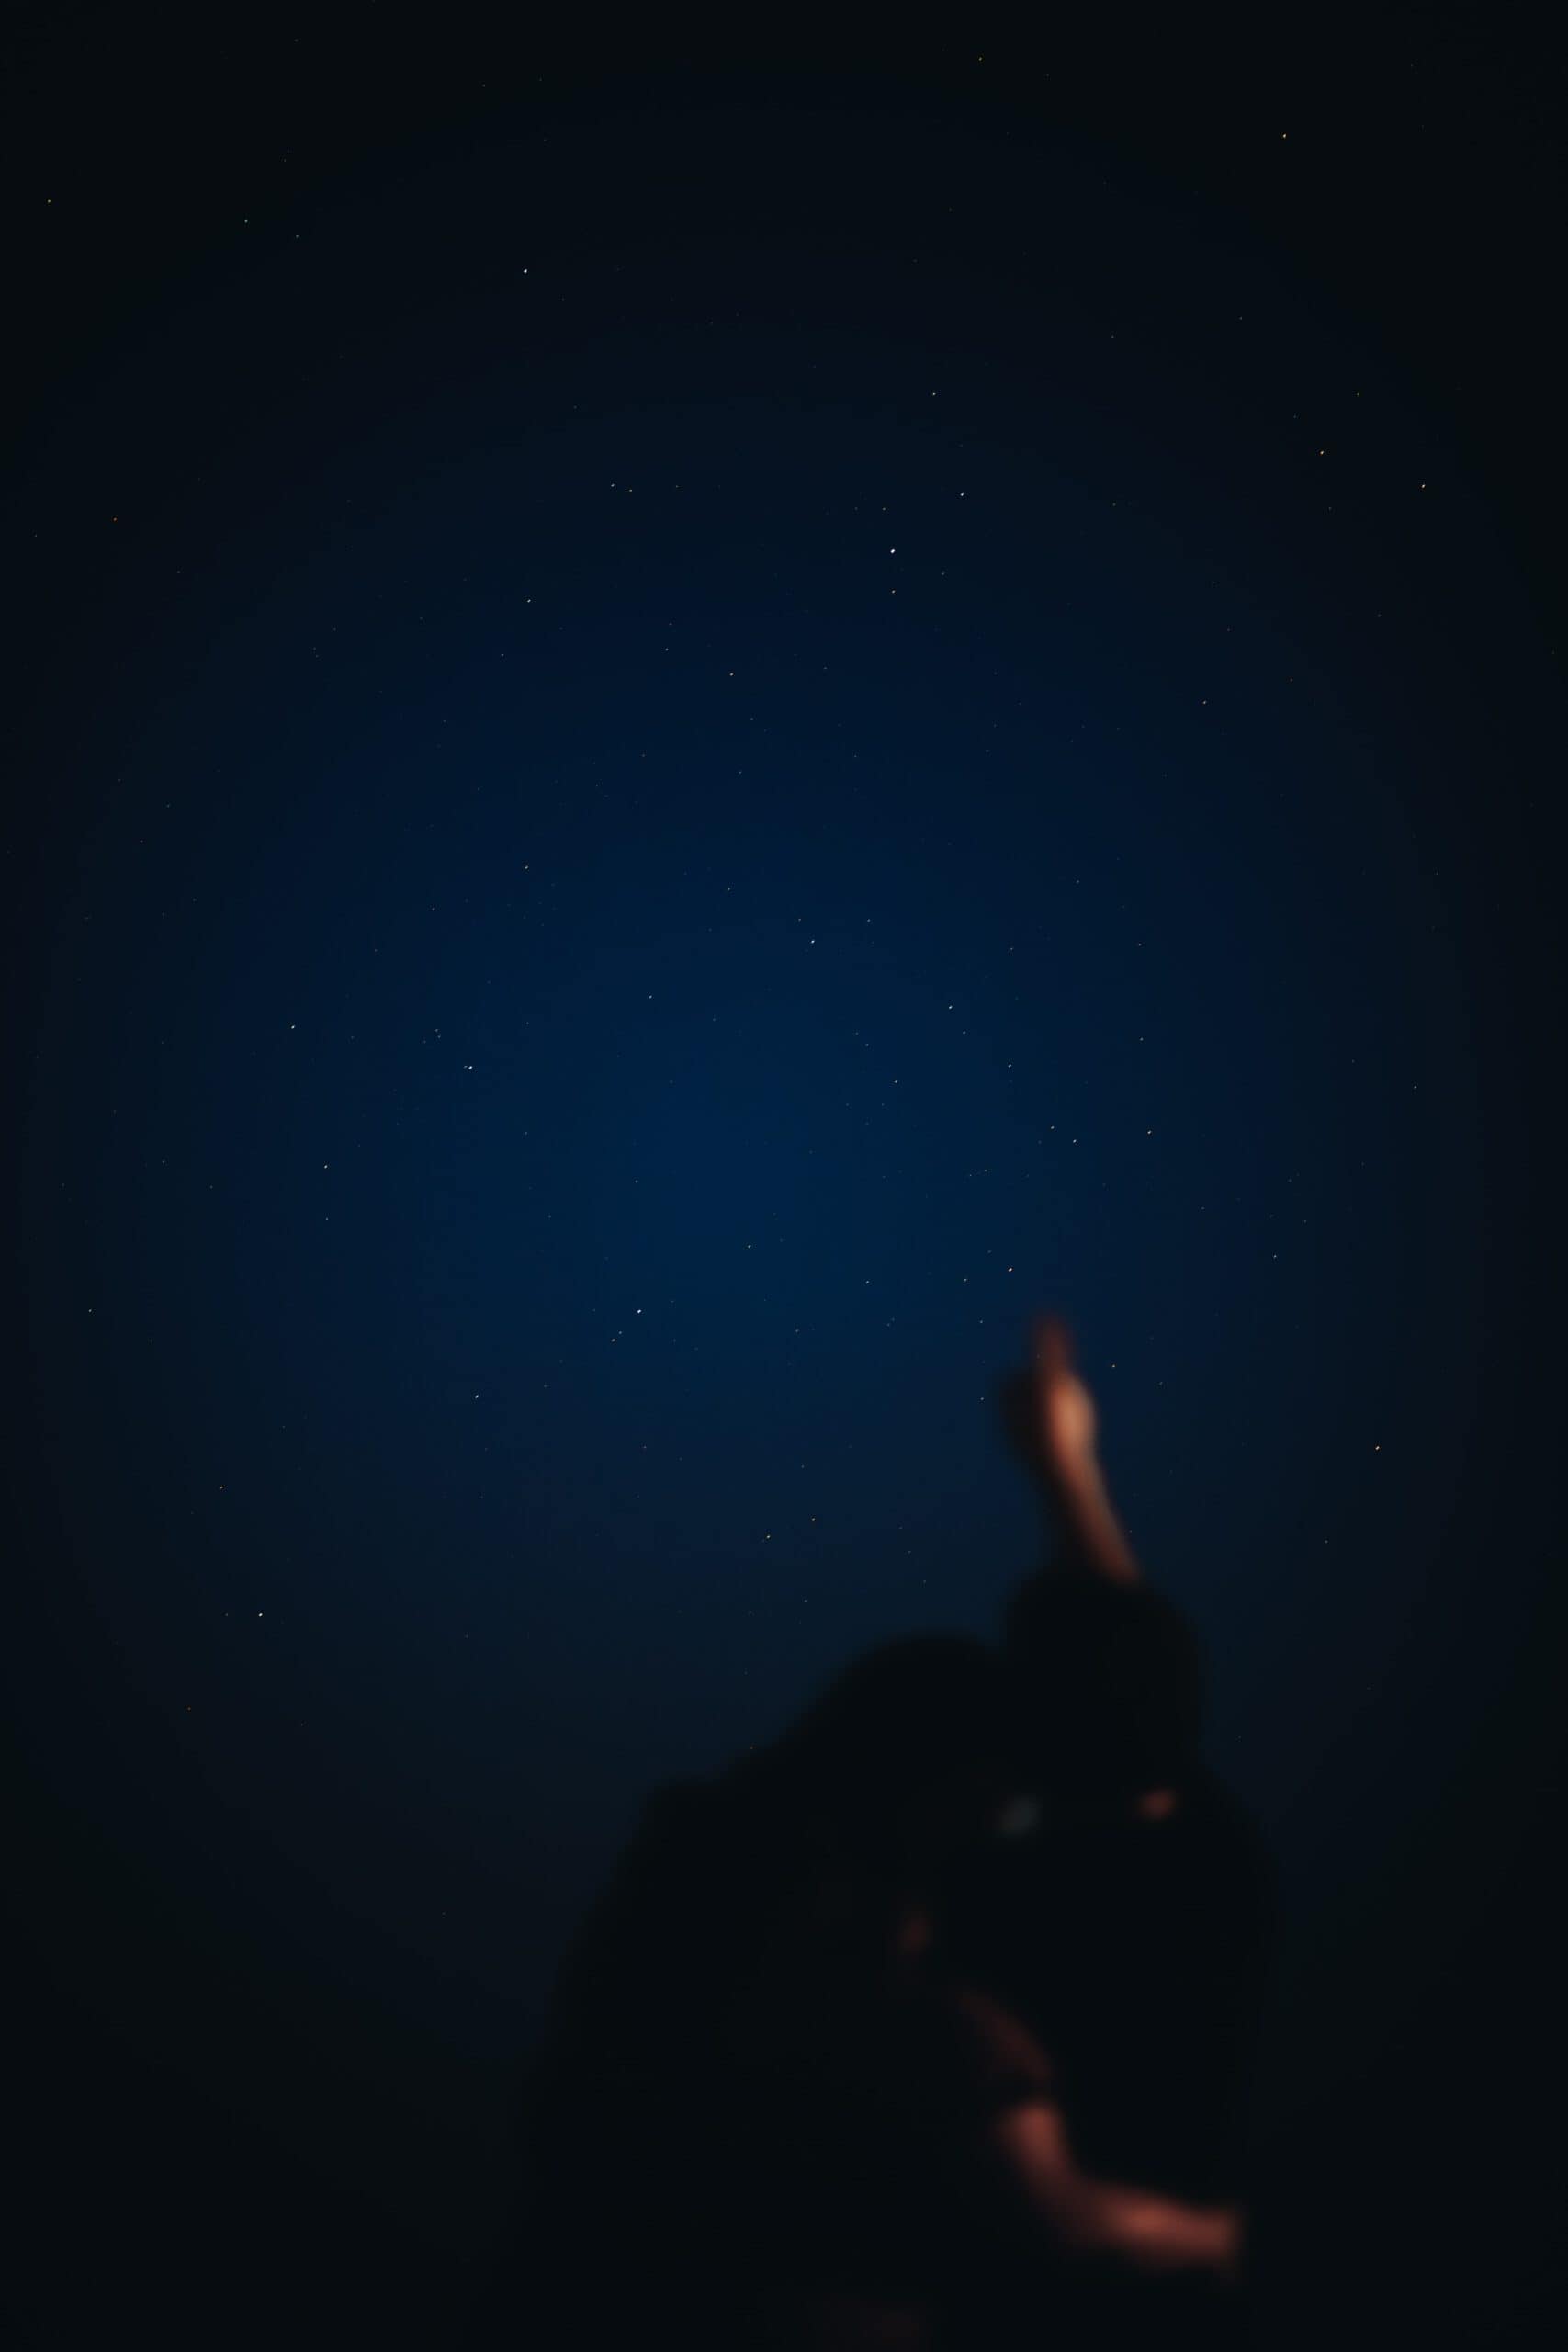 Nachtfotografie gecombineerd met portretfotografie waarin we twee mensen zien waarvan de man naar de sterren wijst terwijl ze elkaar omarmen